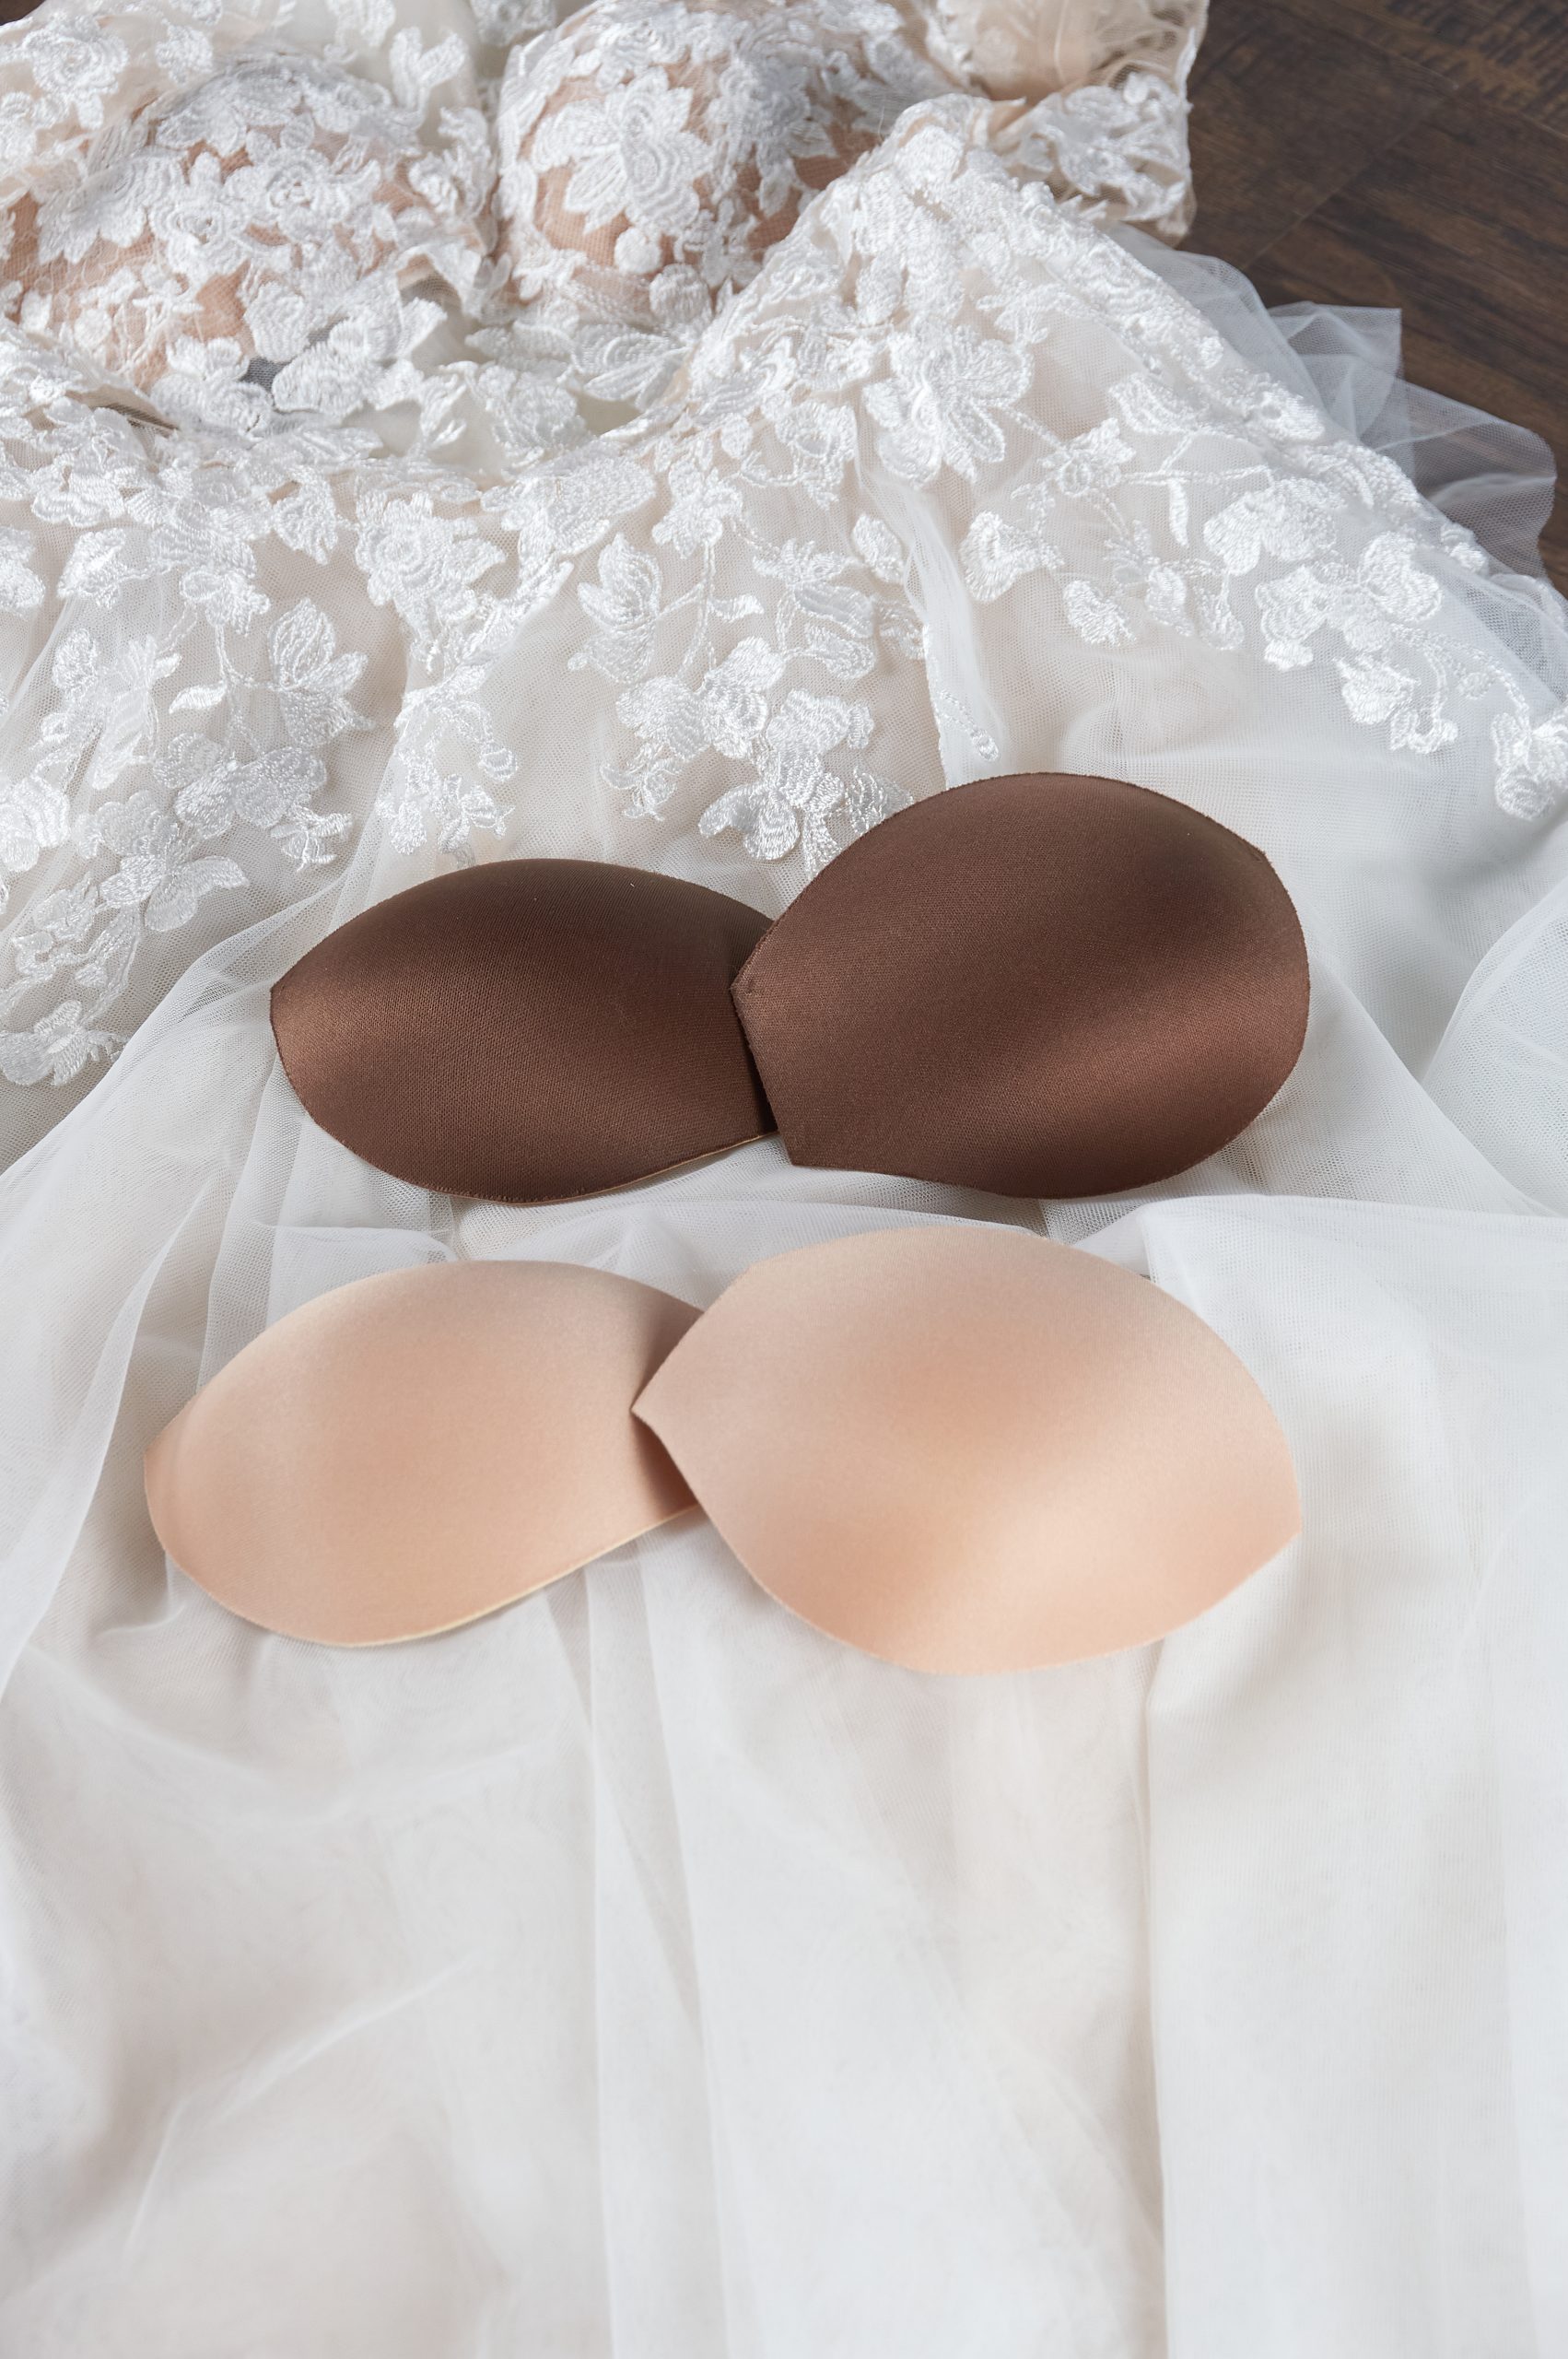 Robe de mariée Maggie Sottero Couleurs de bonnet de soutien-gorge de nude clair à nude foncé